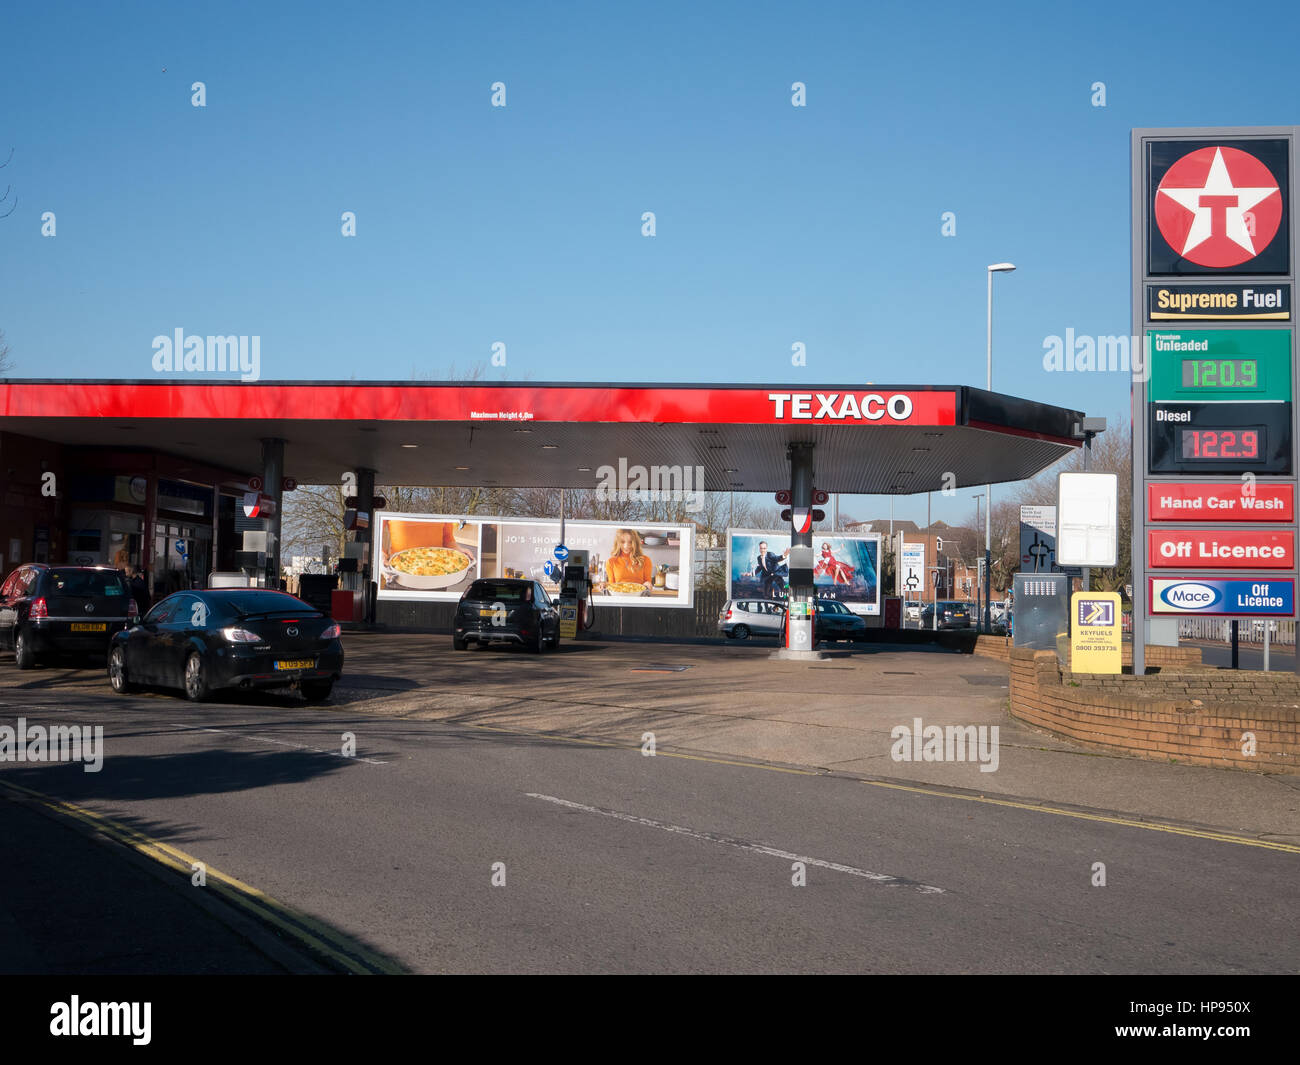 A Texaco petrol station forecourt Stock Photo